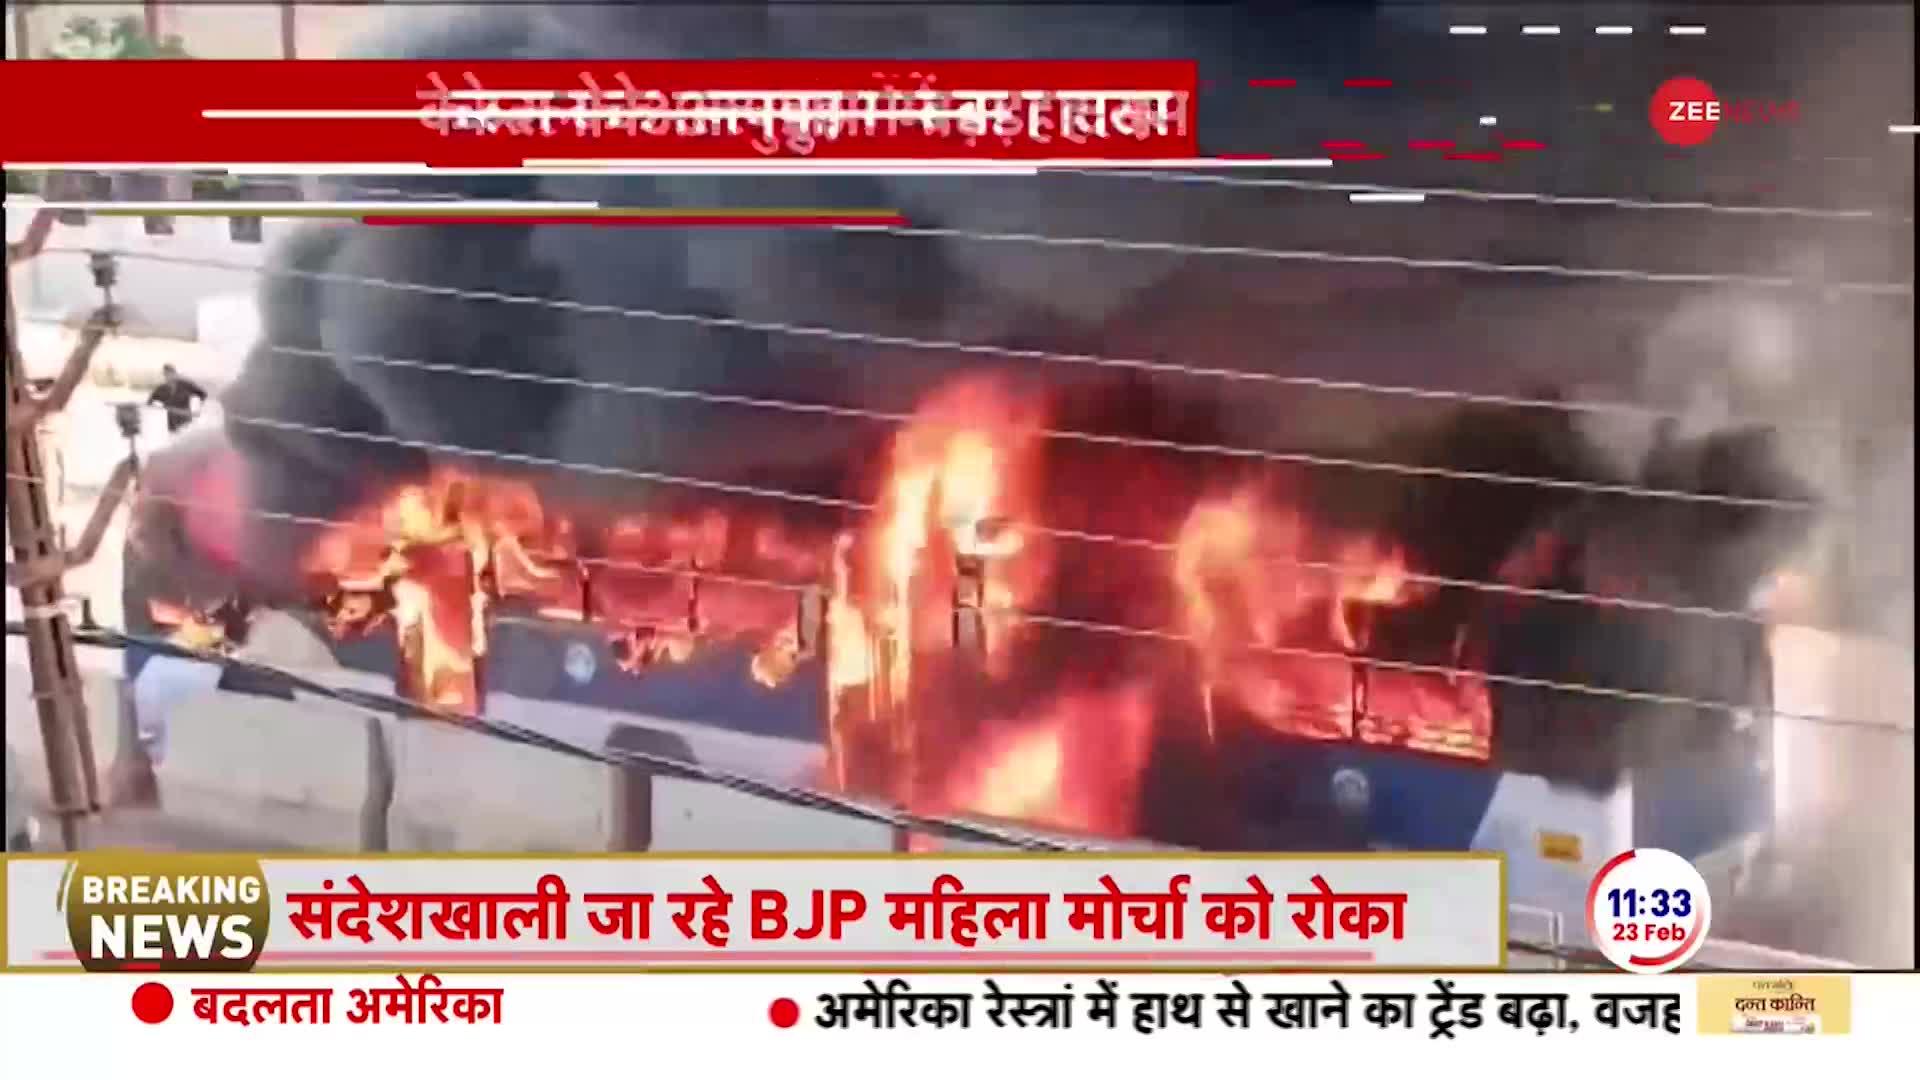 KERLA BUS FIRE Breaking: केरल के अलपुझा सरकारी बस में अचानक लग गई आग